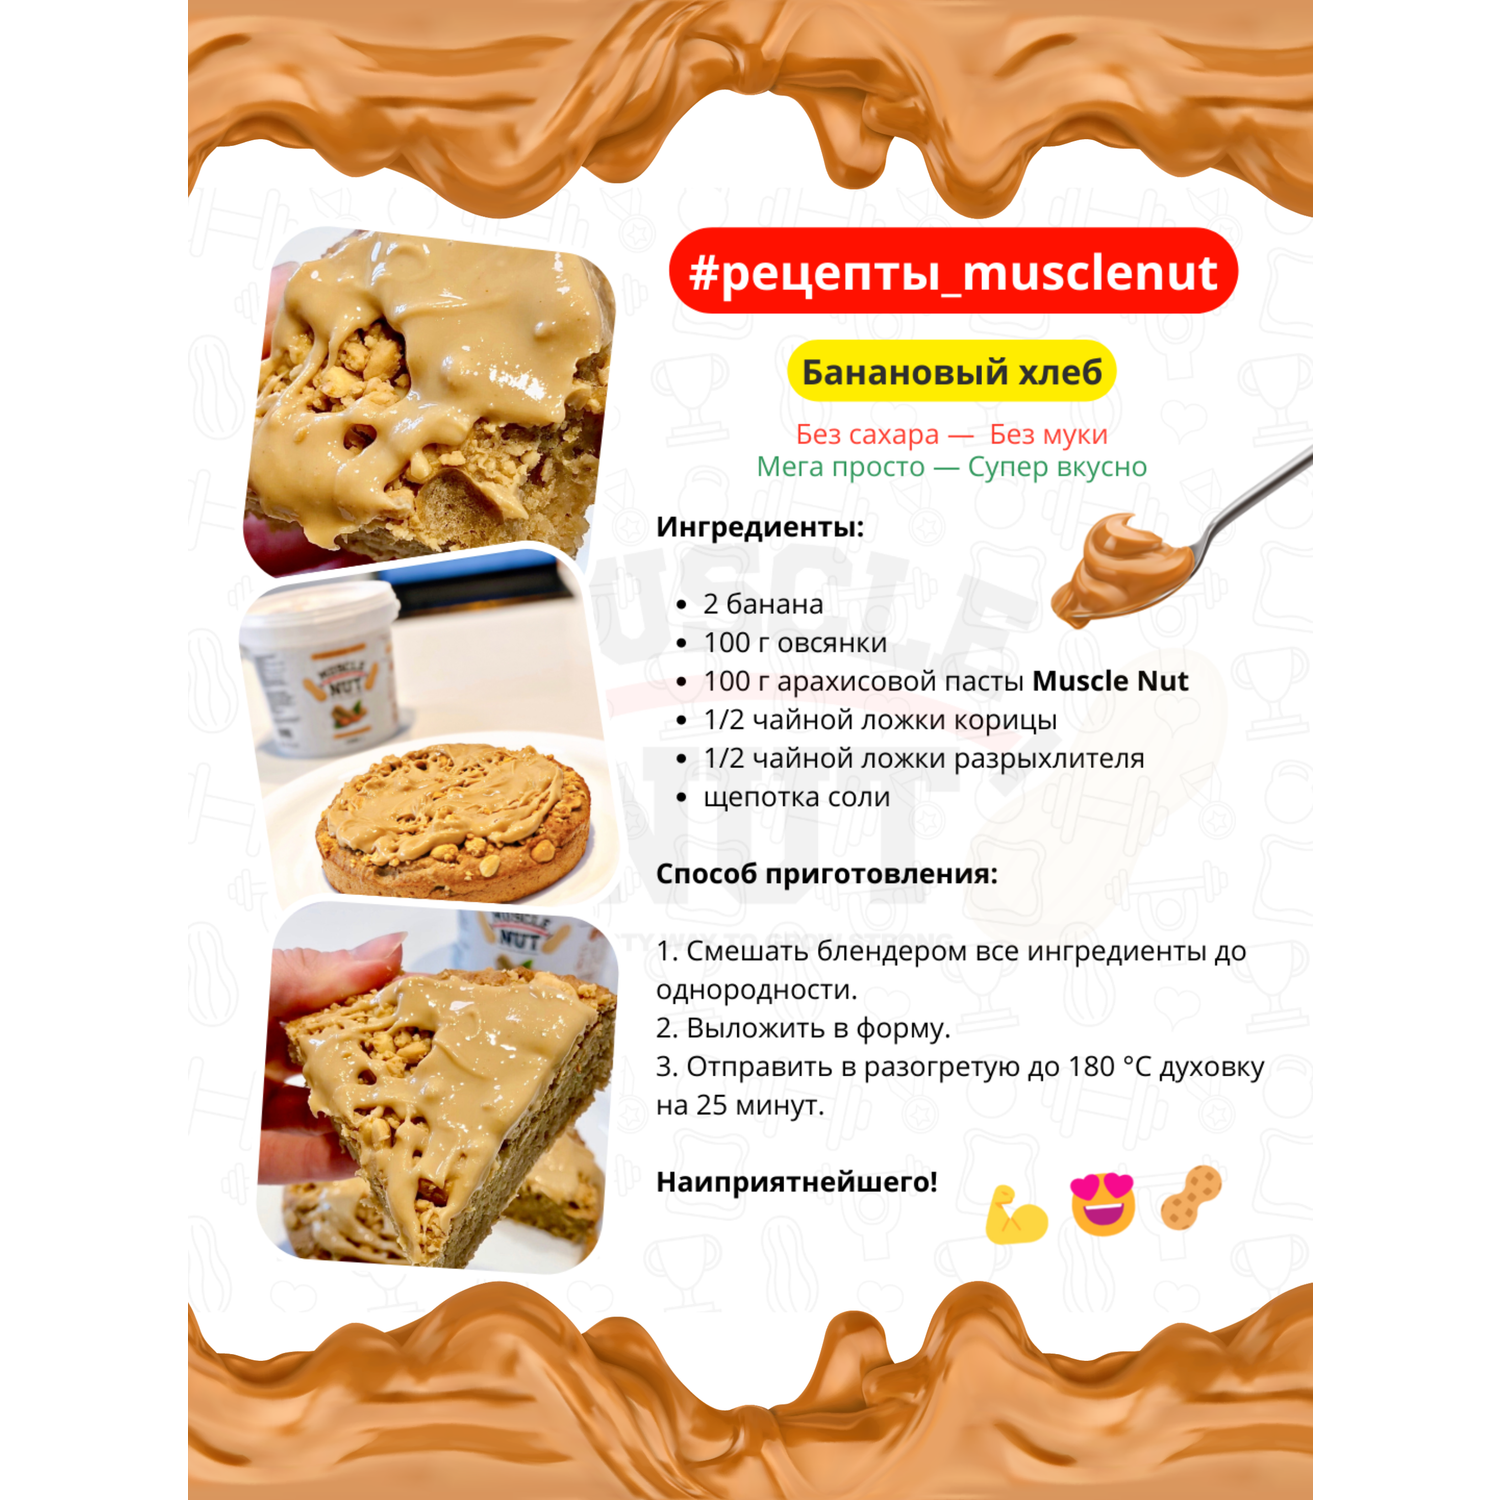 Арахисовая паста Muscle Nut с протеином без сахара натуральная высокобелковая 300 г - фото 6